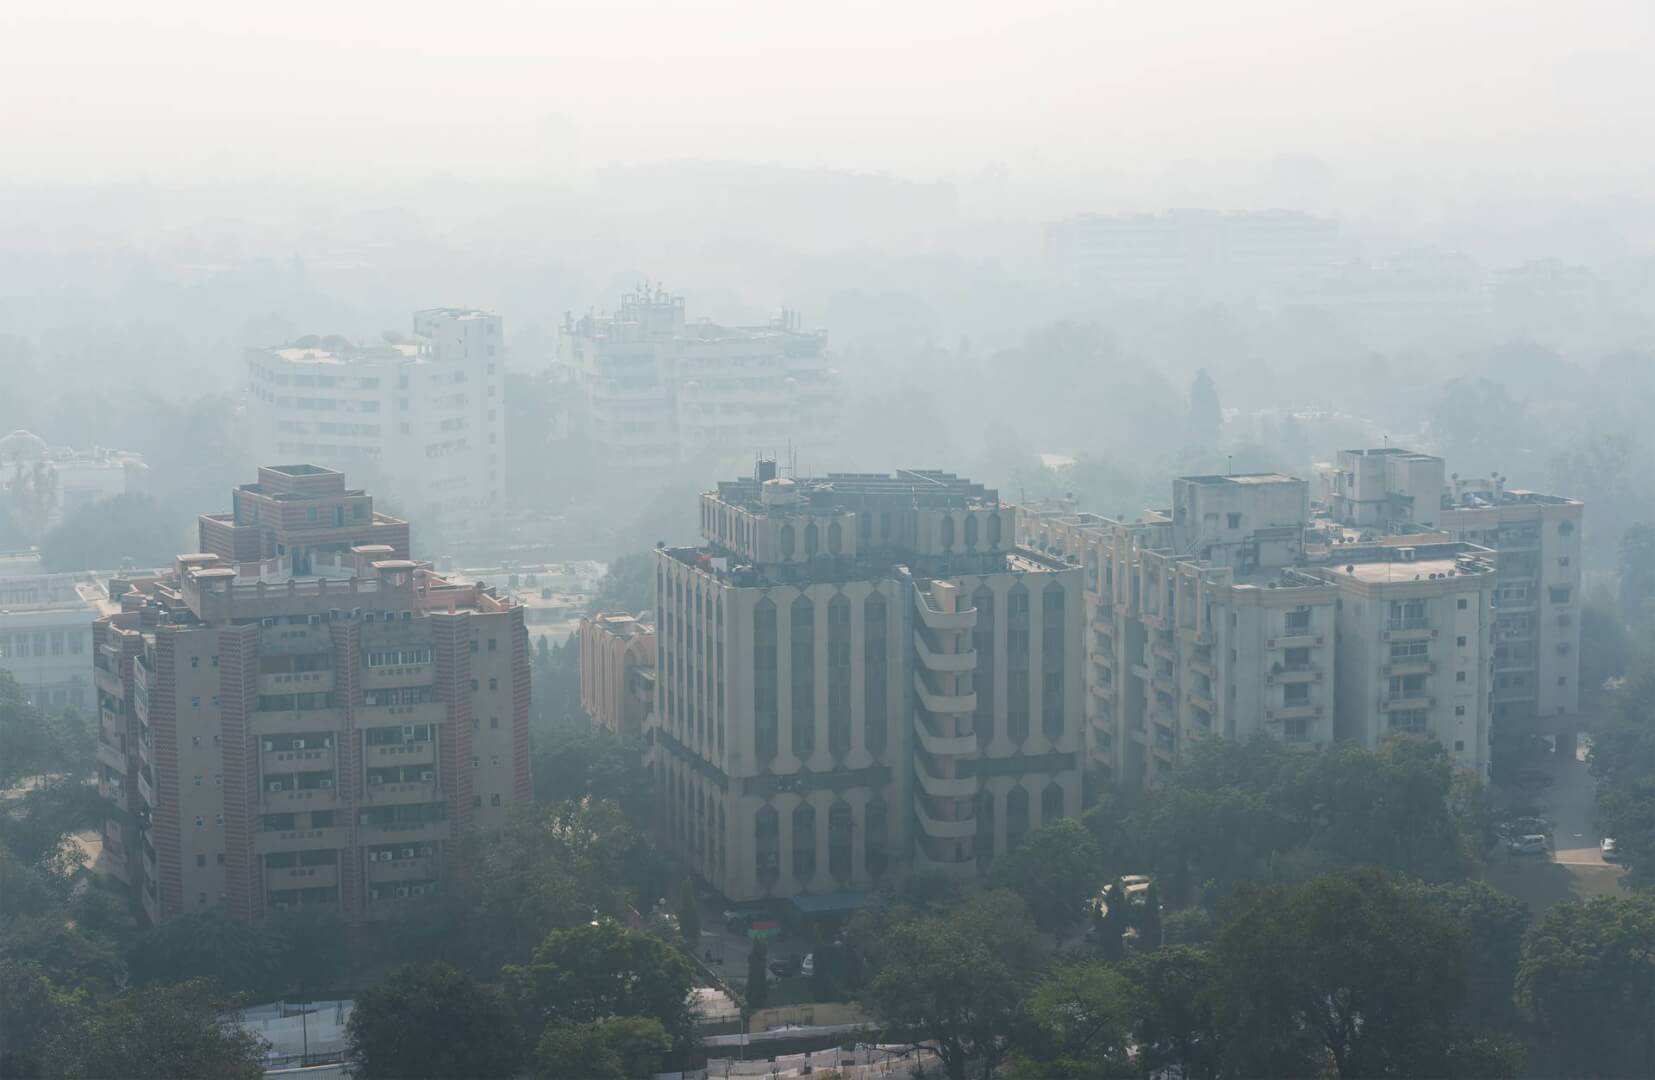 Indie Smog. Hung Chung Chih / Shutterstock.com|Powietrze w Małopolsce|zanieczyszczenie powietrza Kraków Poznań|Skala Jakości Powietrza